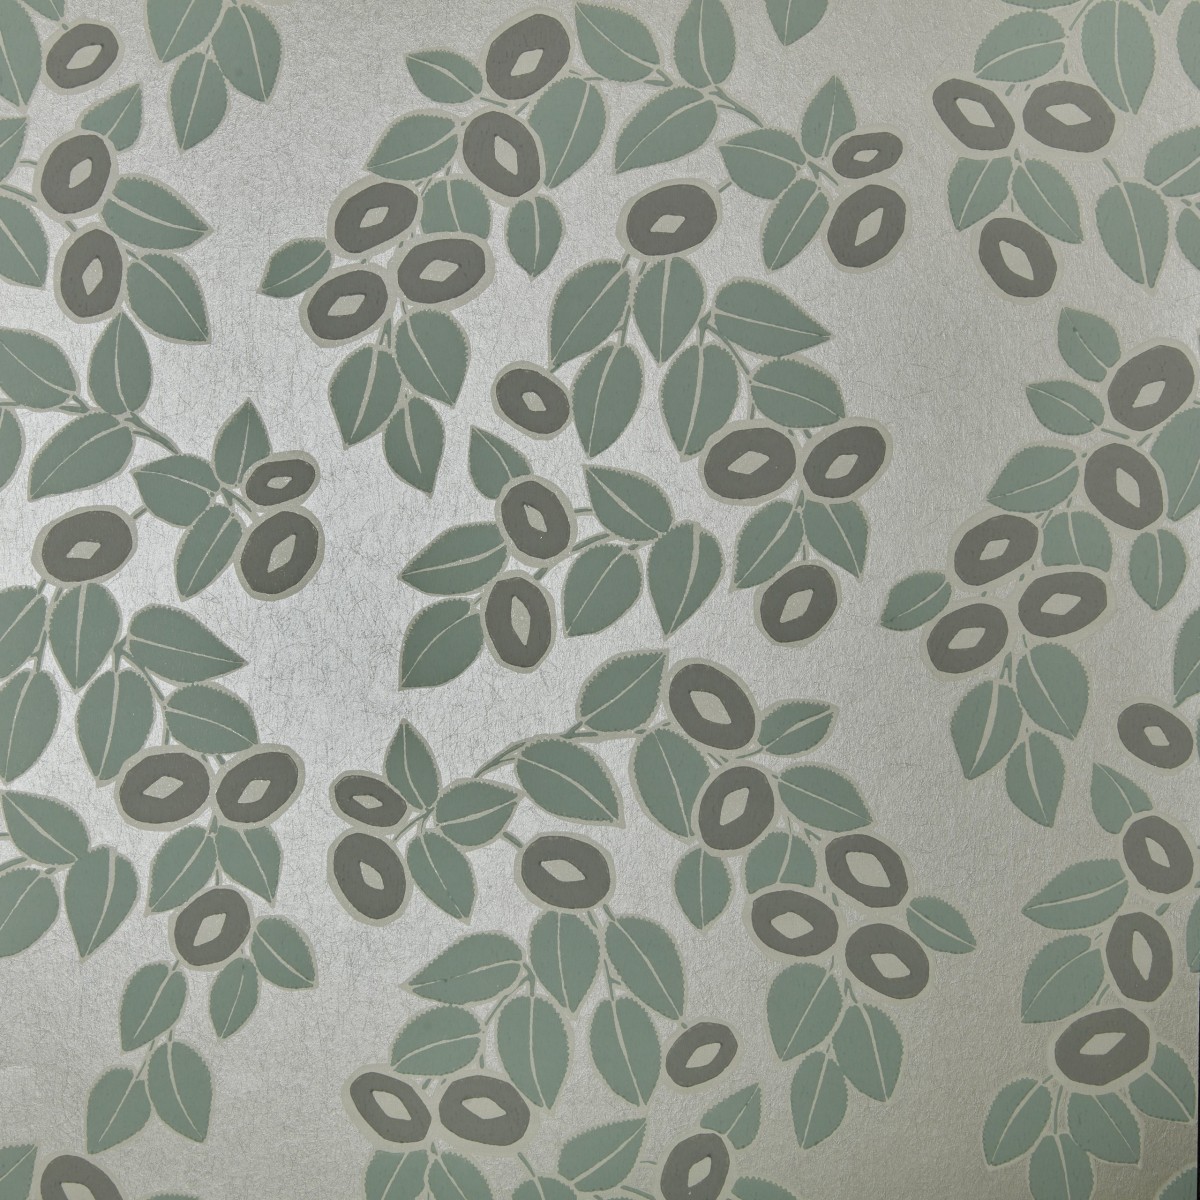 Tapet Rosetta, Neo Mint Green Luxury Leaf, 1838 Wallcoverings, 5.3mp / rola, Tapet living 